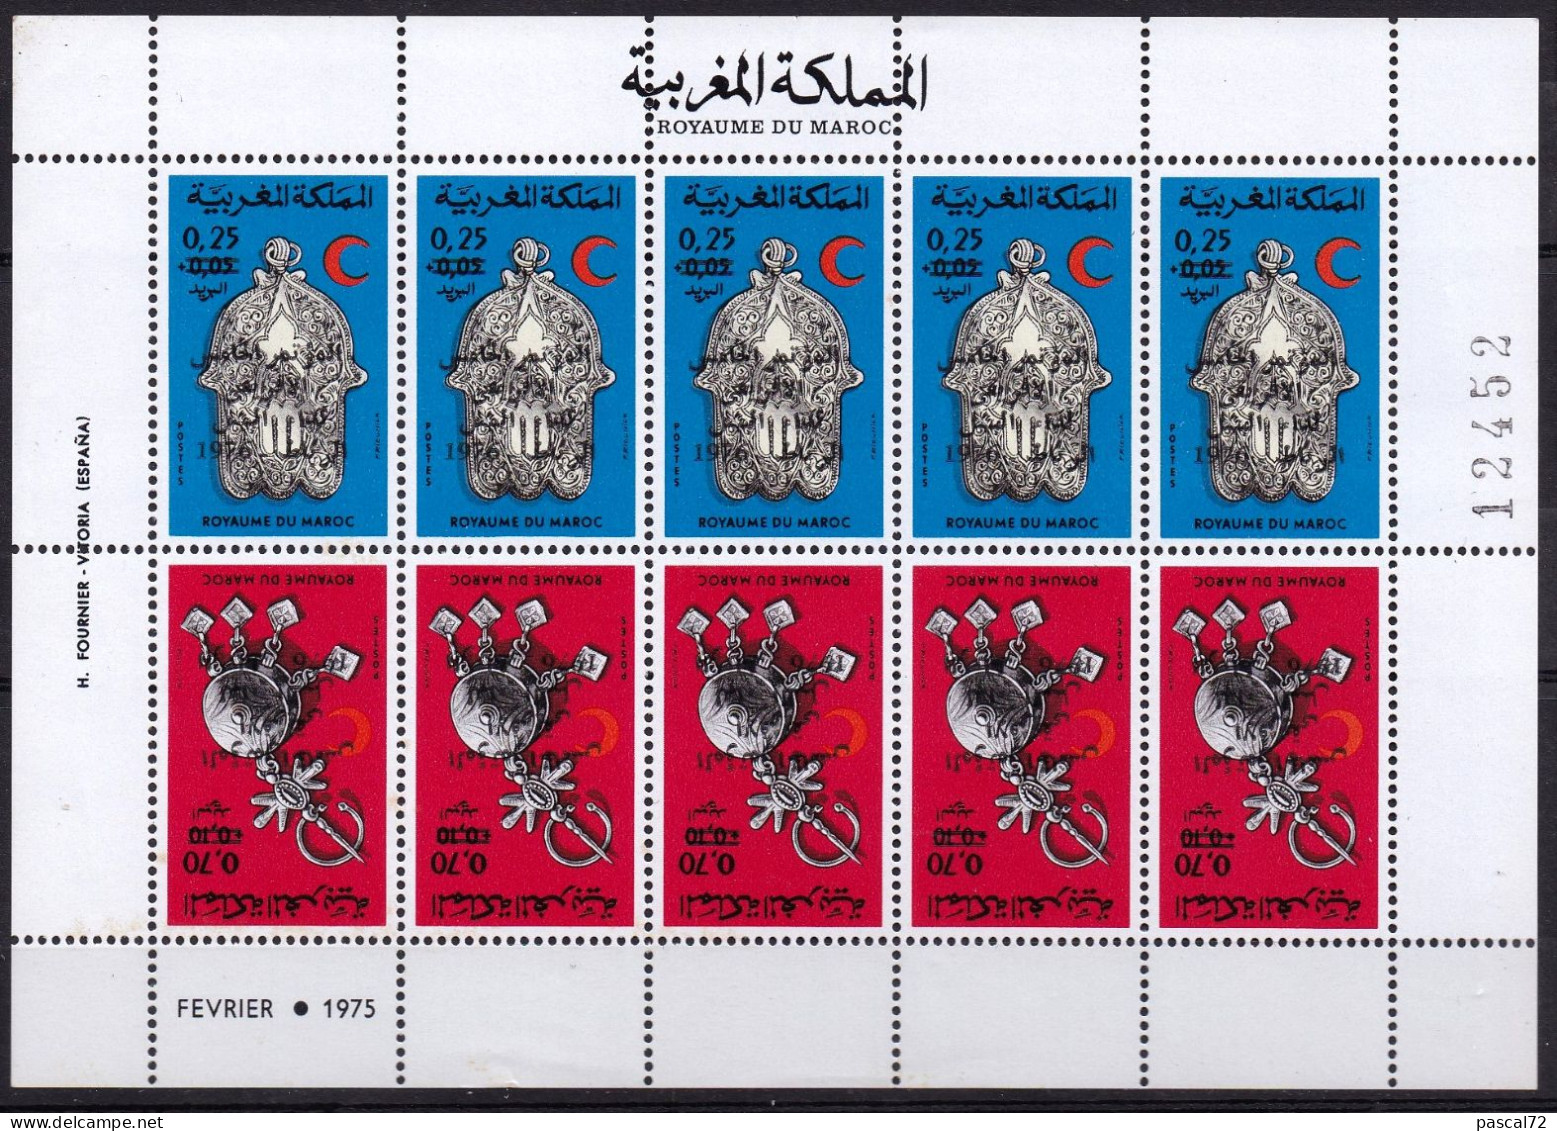 MAROC 1976 FEUILLE DE 5 PAIRES TÊTE-BÊCHE Y&T N° 782A N** - Morocco (1956-...)